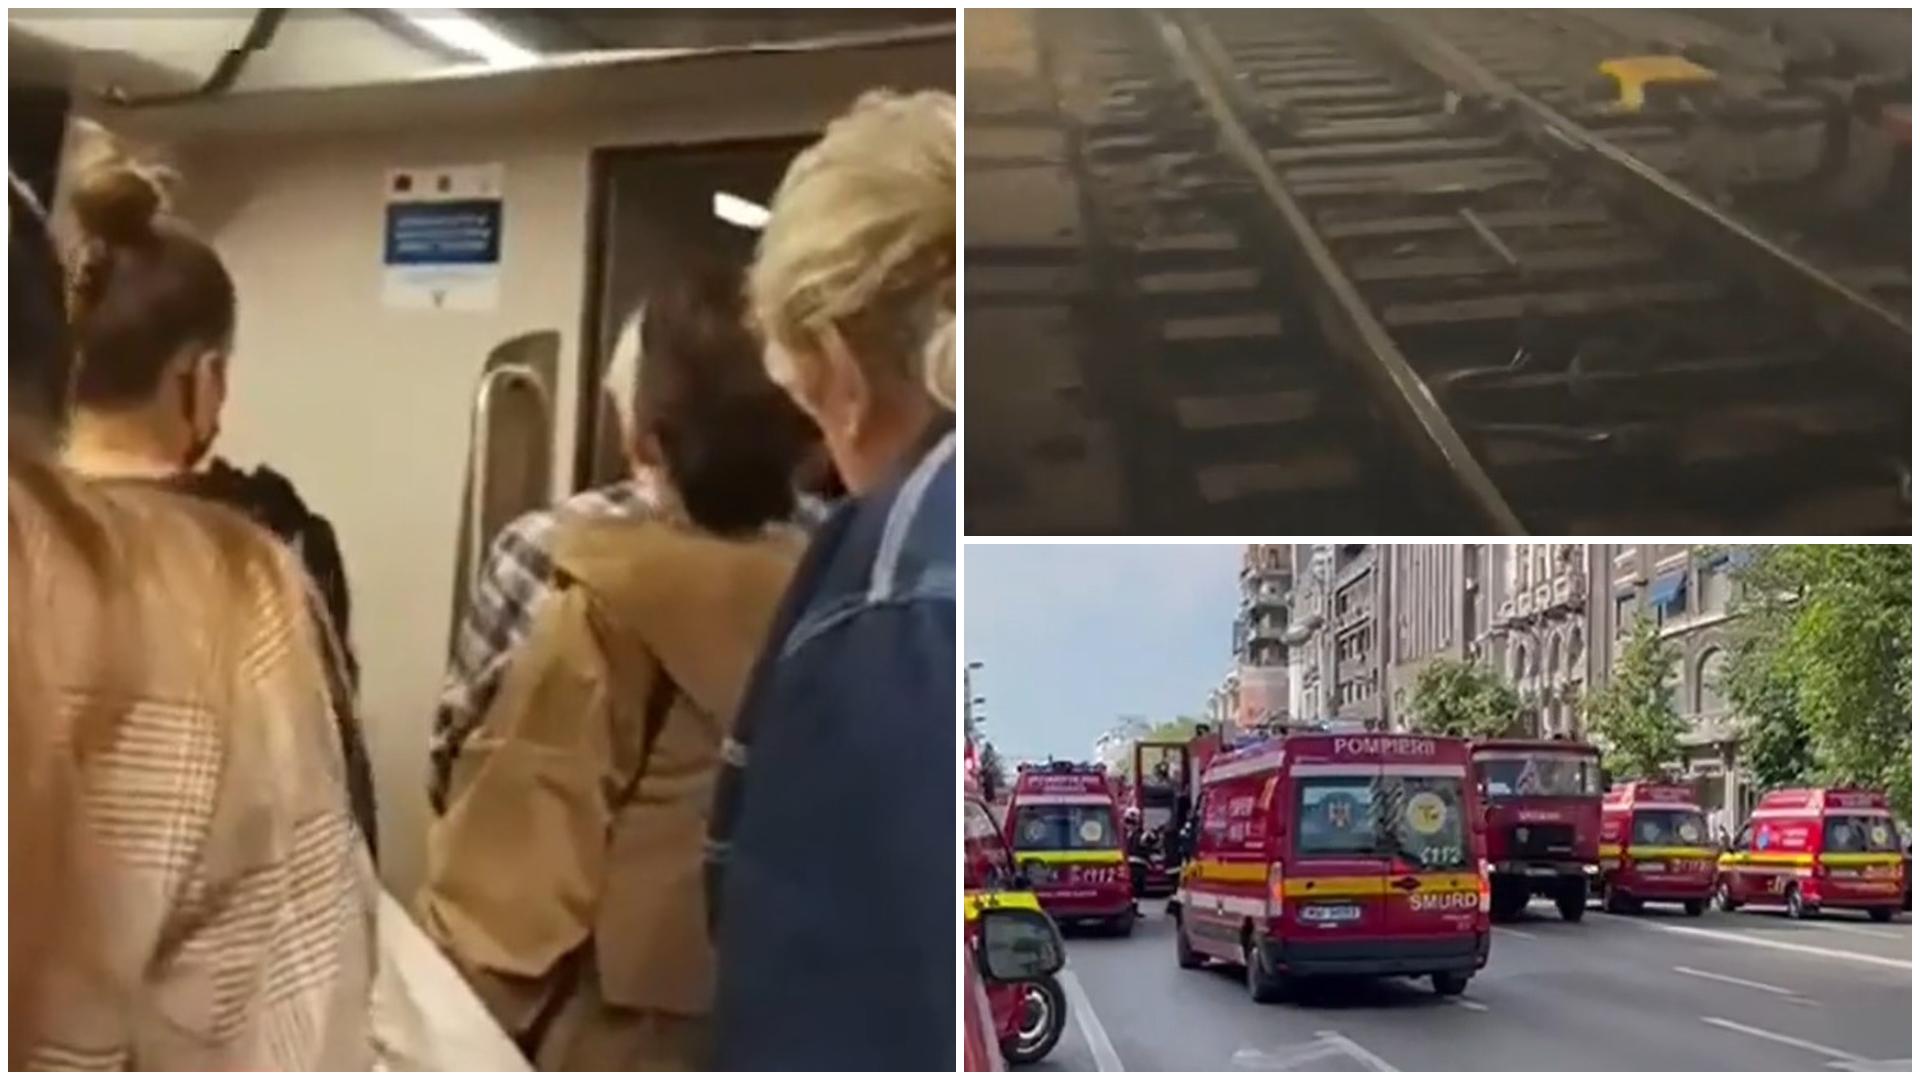 Mărturisirile unui călător care se afla în metroul defect de la Piața Romană: „Ne-a fost teamă să nu murim asfixiați”